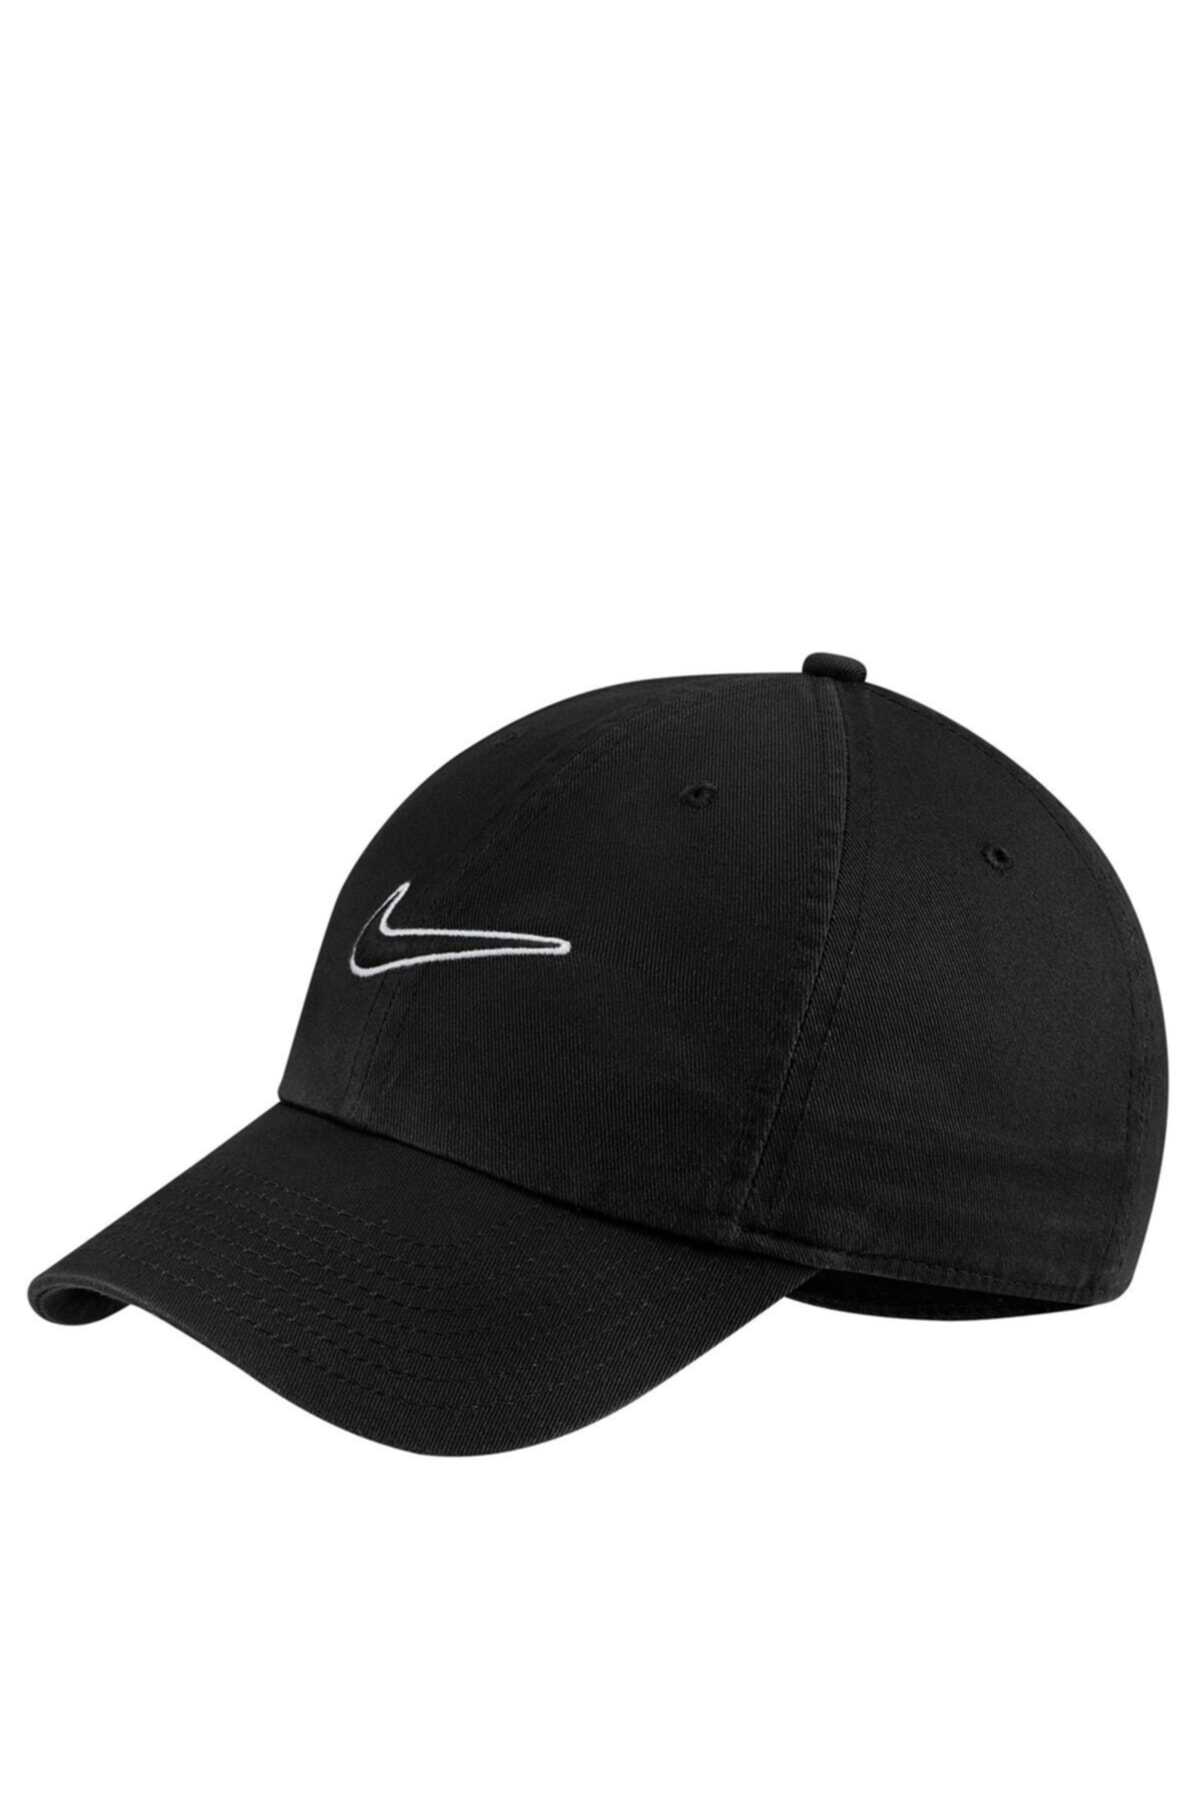 کلاه کپ ورزشی یونیسکس مشکی برند Nike 